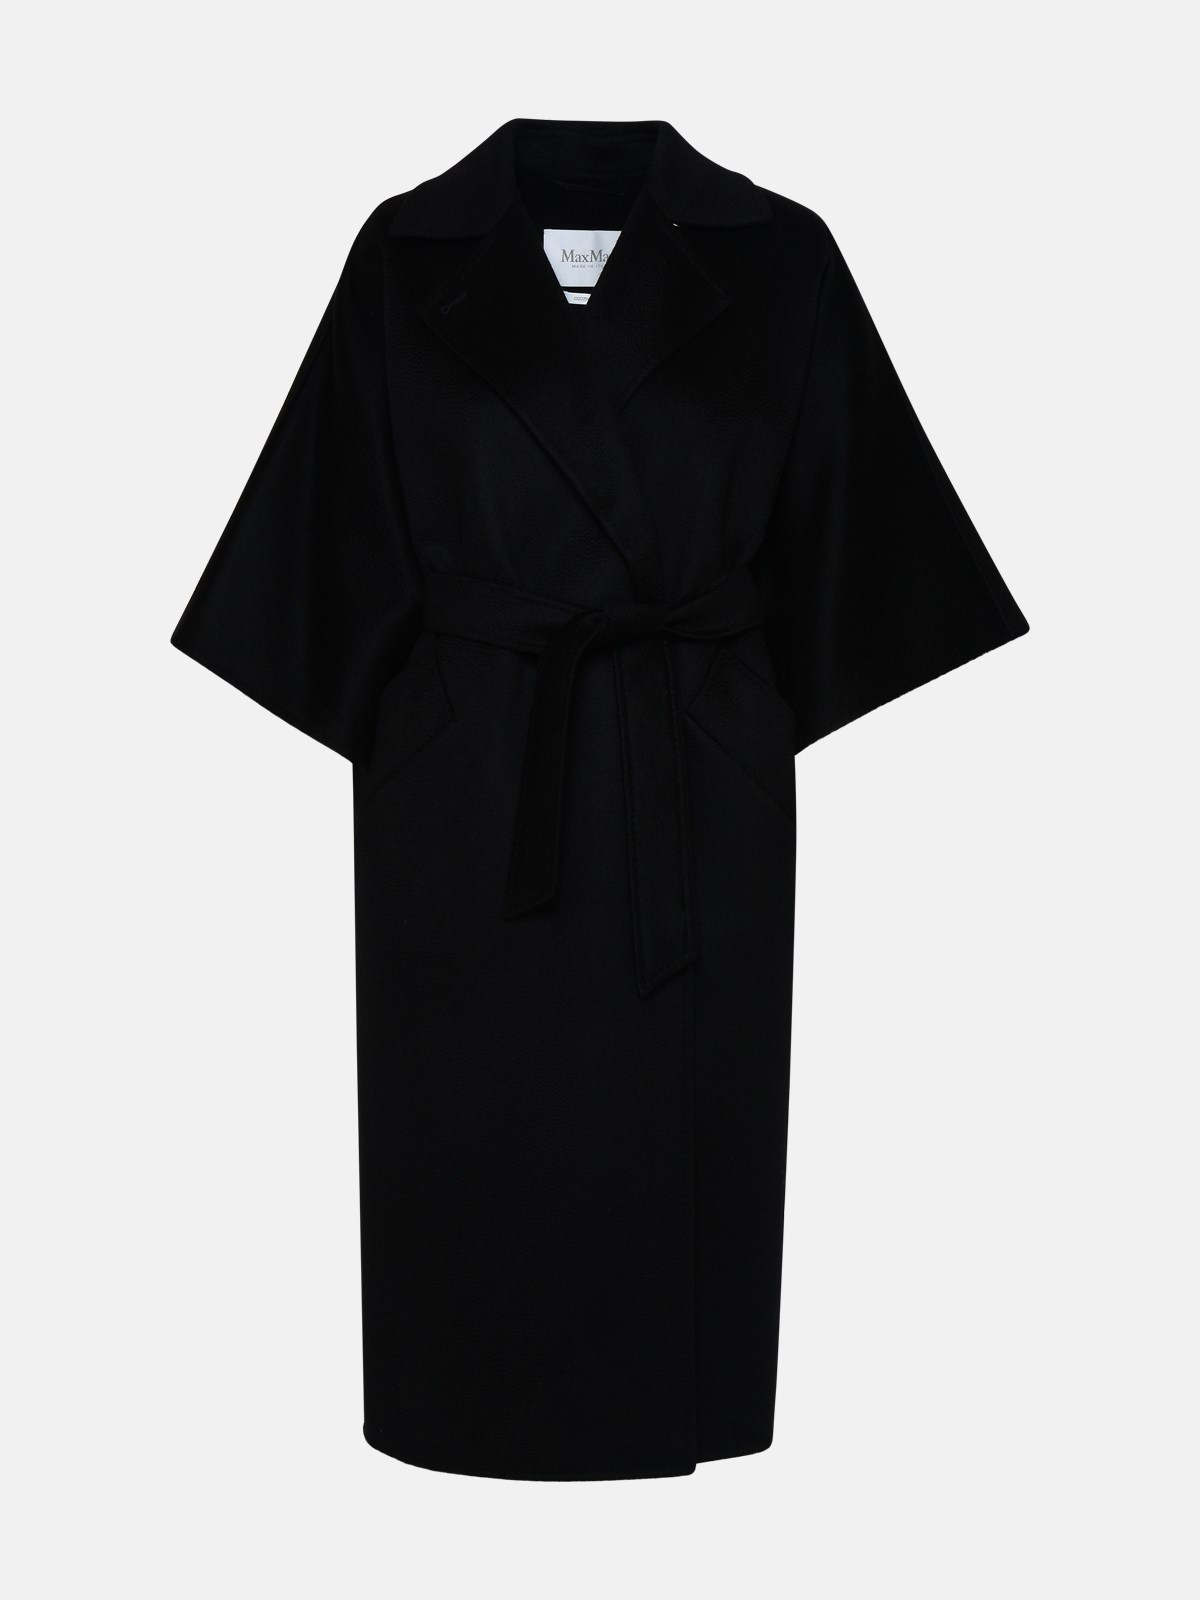 Max Mara Umbria Black Cashmere Coat